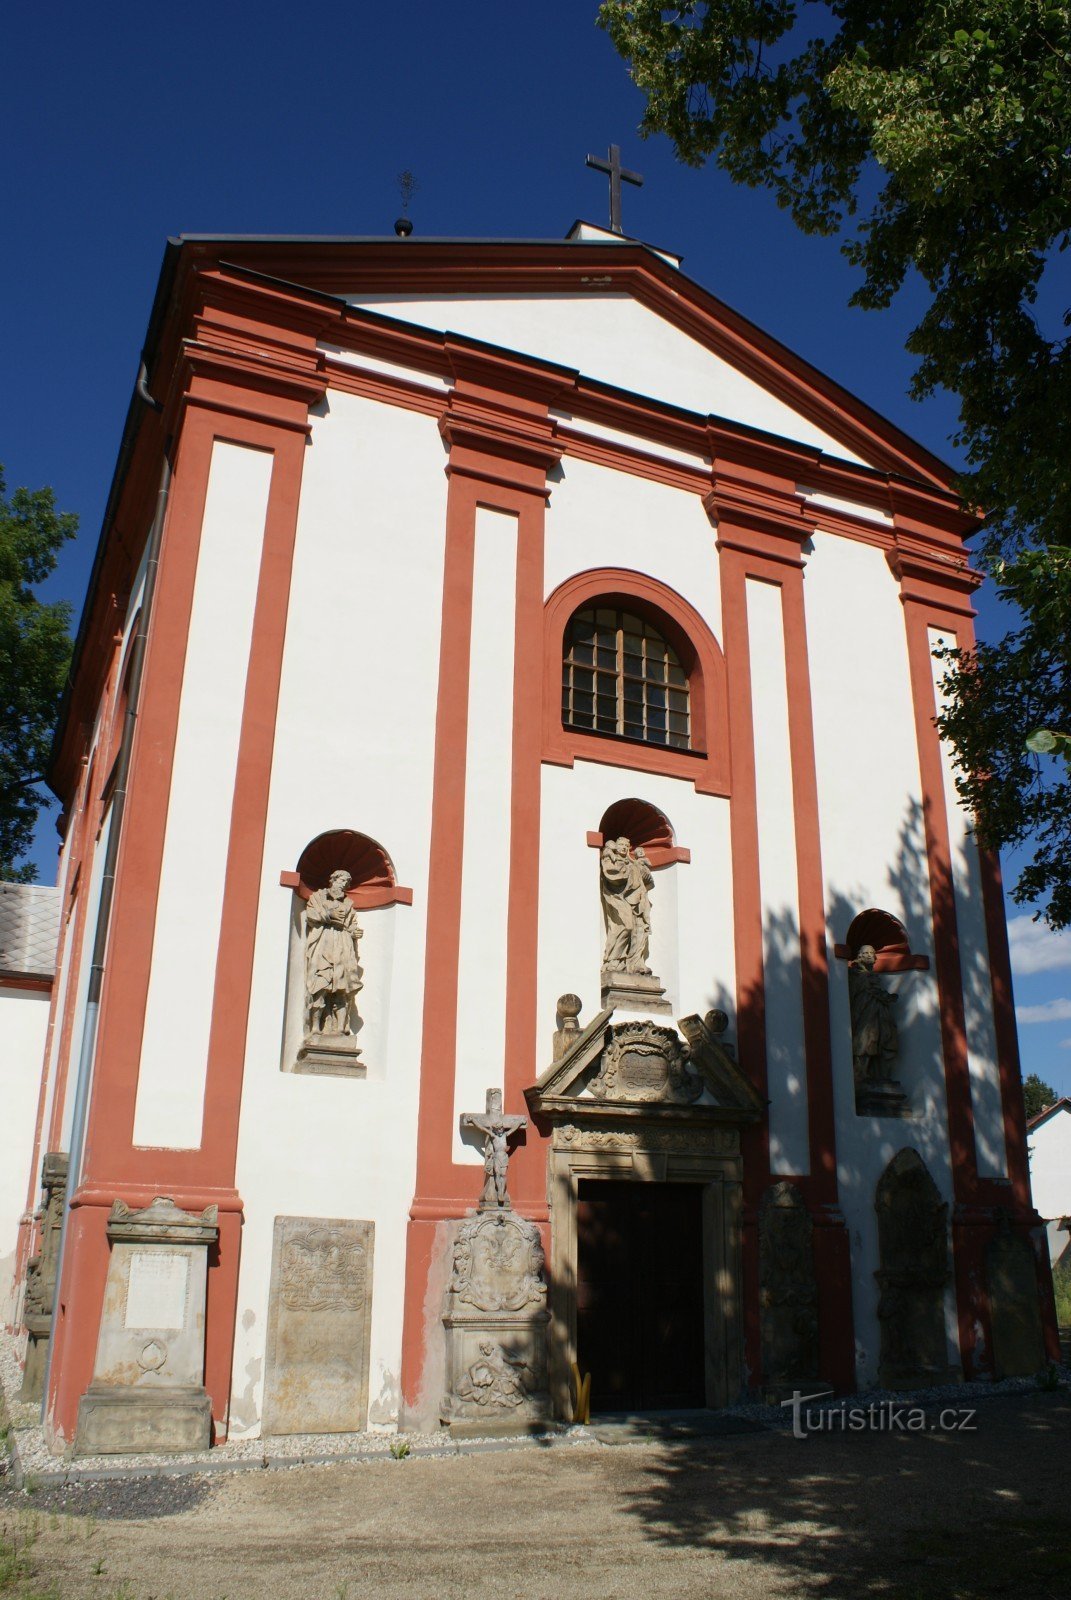 fachada da igreja